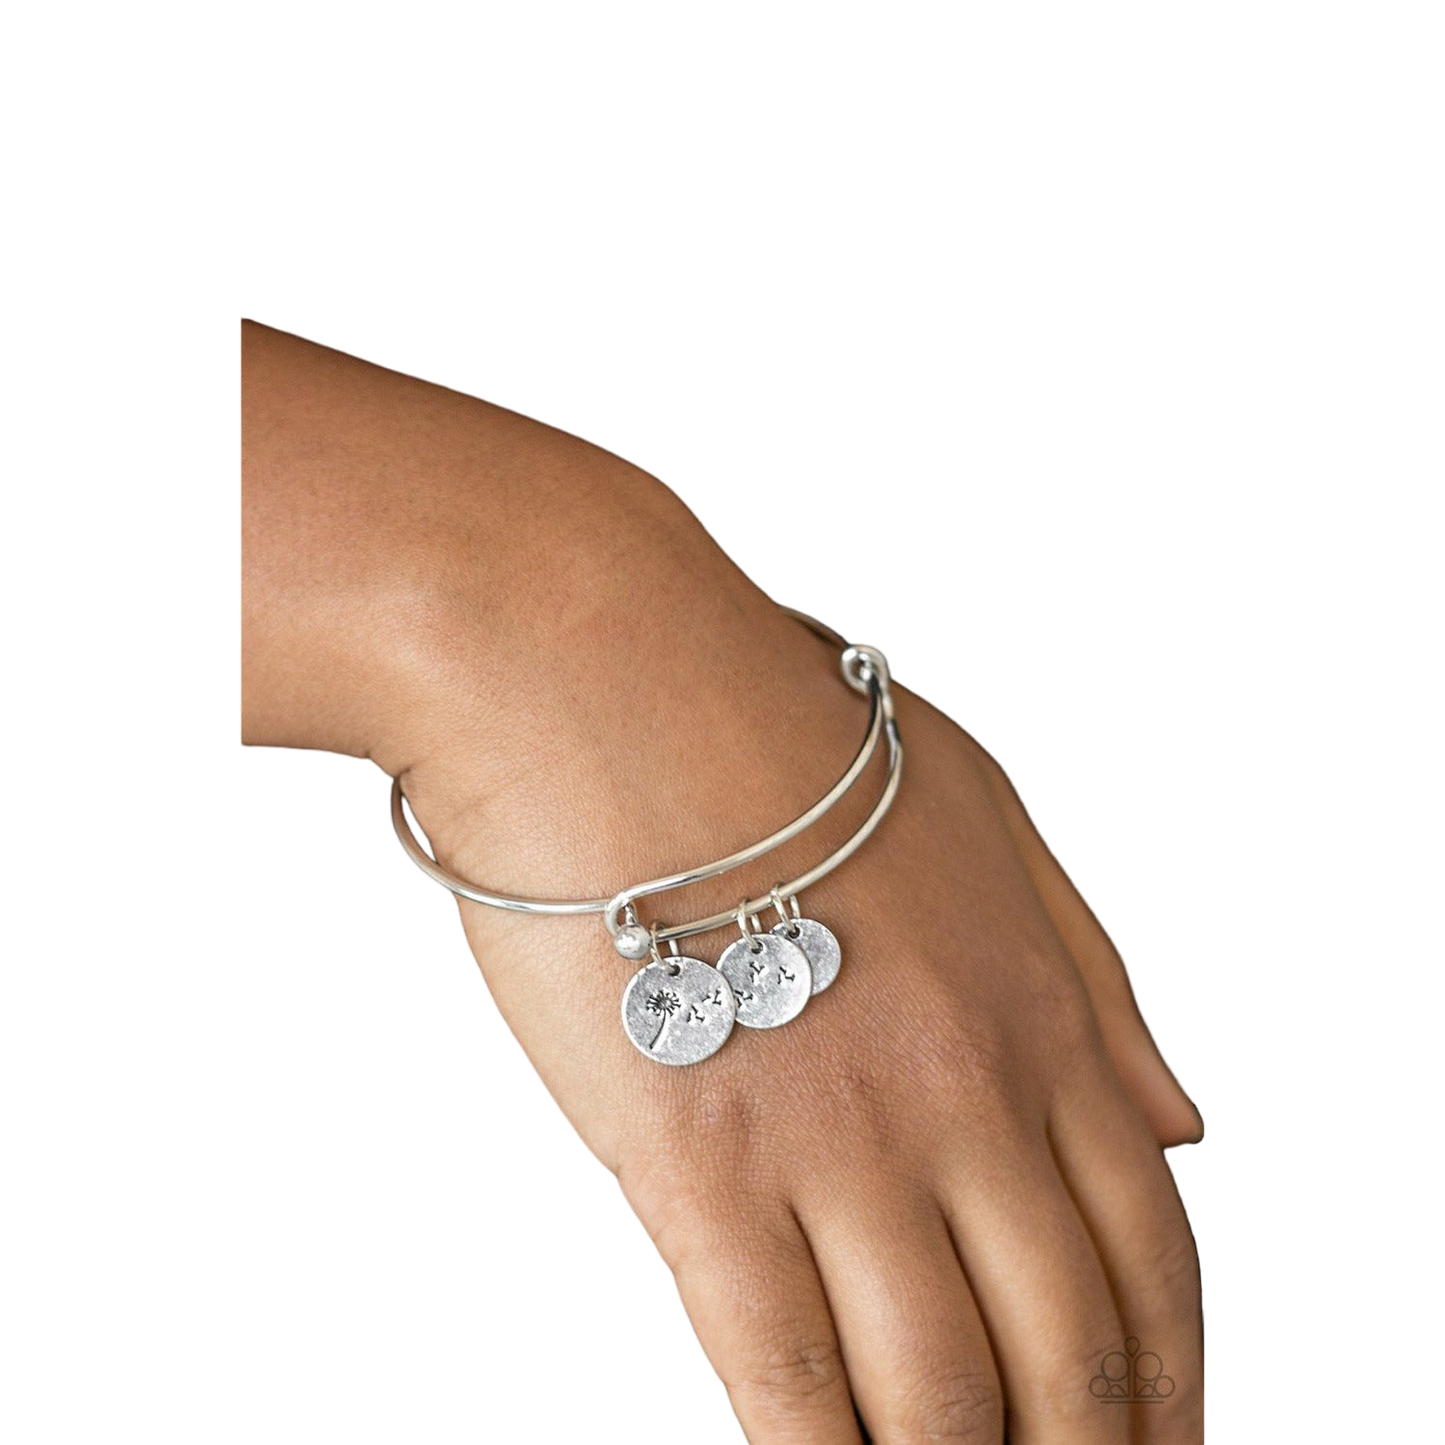 Dreamy Dandelions - Silver bracelet